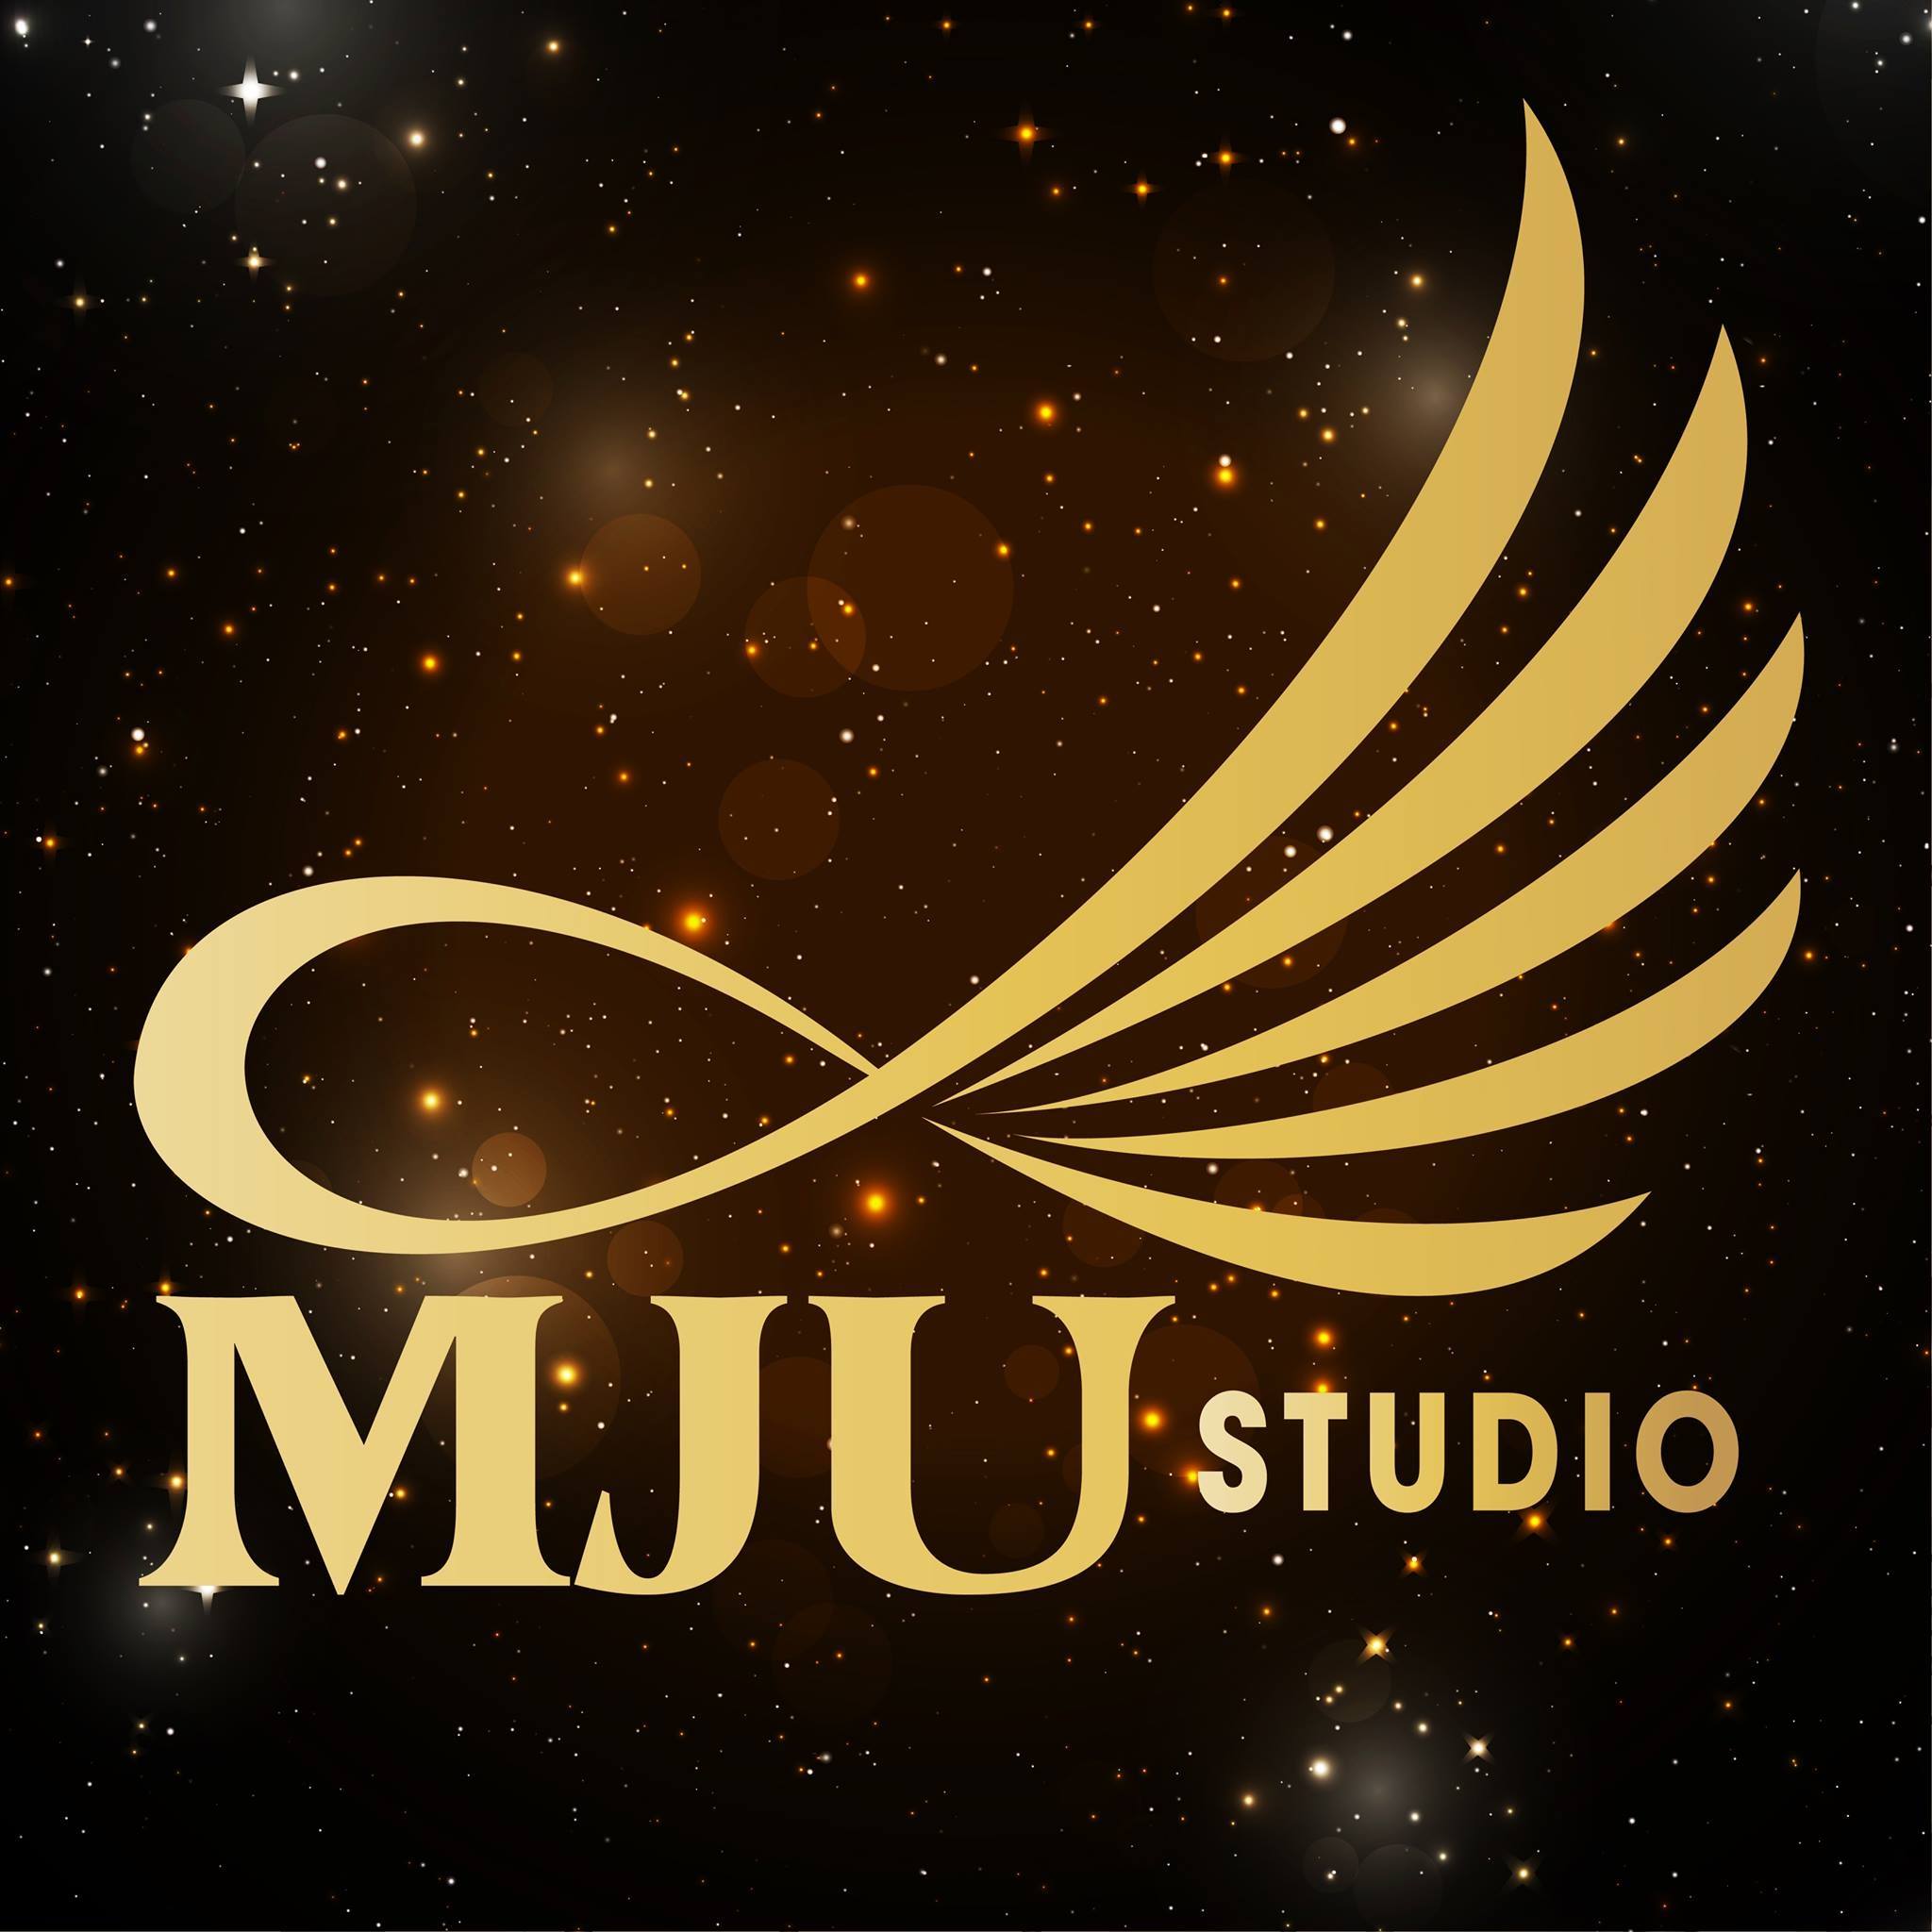 Mju Studio